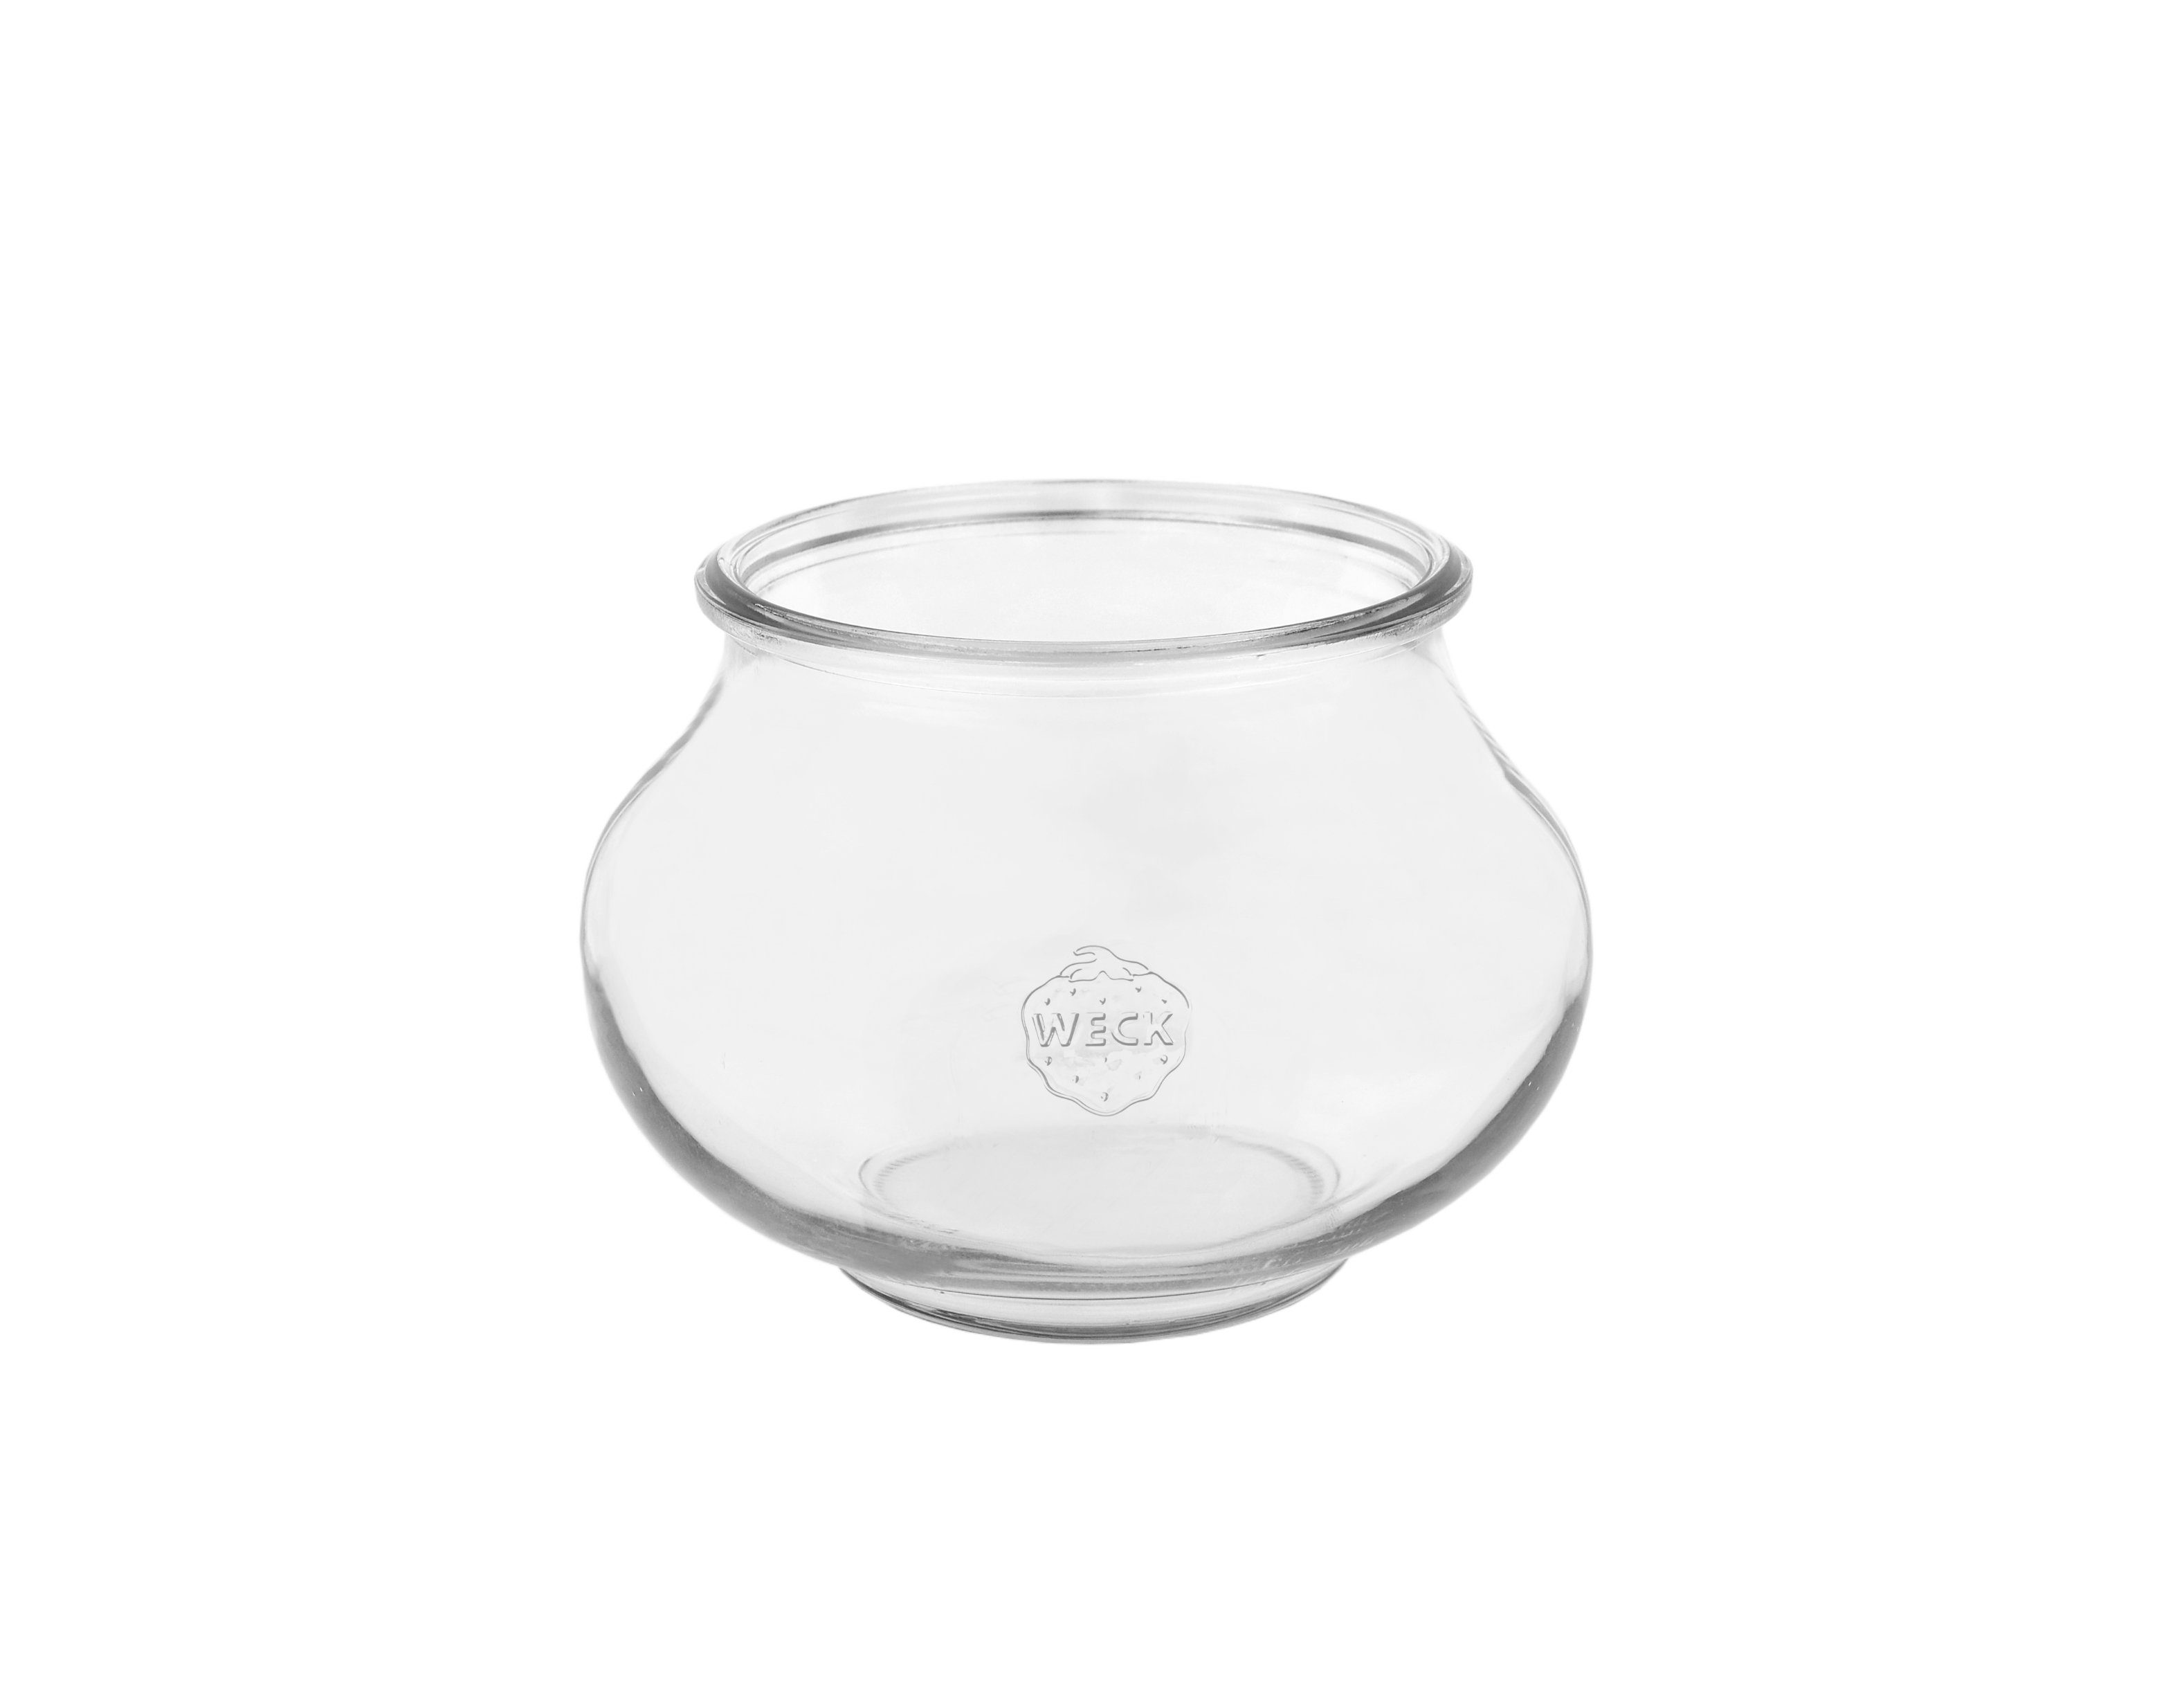 6 Sturzgläser MamboCat Gläser + Glas 220ml Set Einmachglas Deckeln, 1/4L Schmuckgläser, 6er Weck